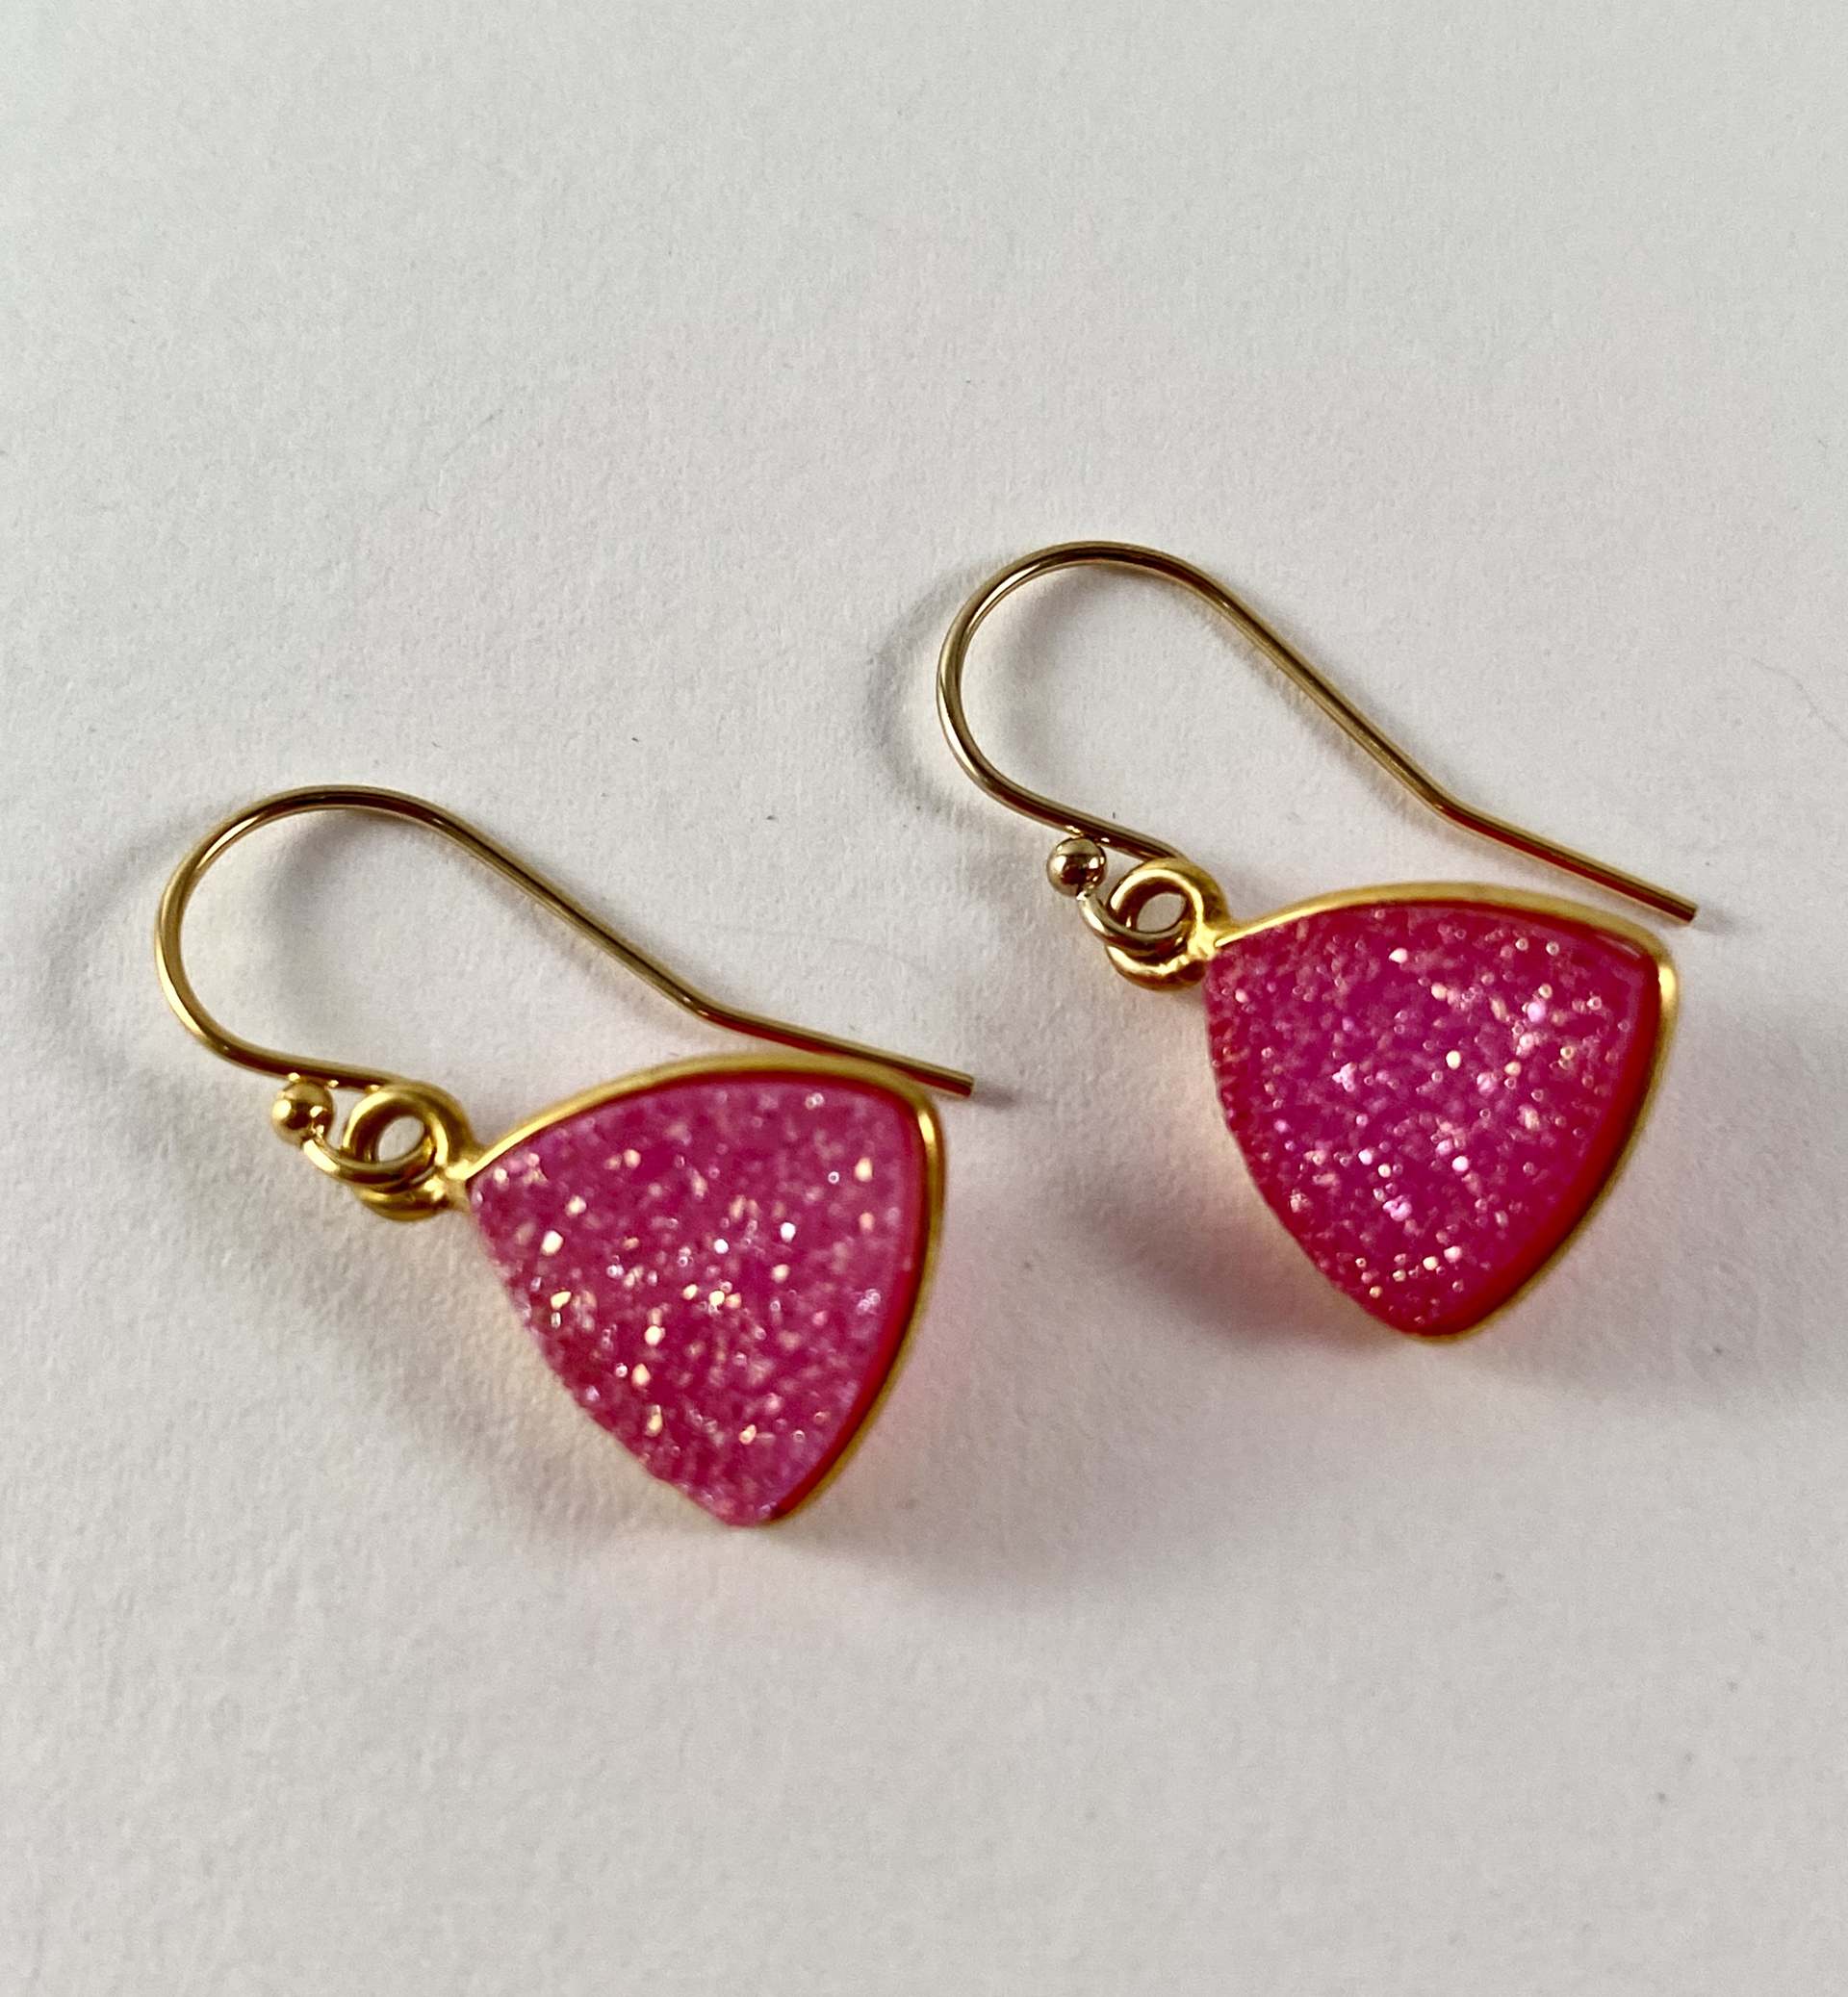 Hot Pink Druzy Earrings (GF), 1r by Nance Trueworthy